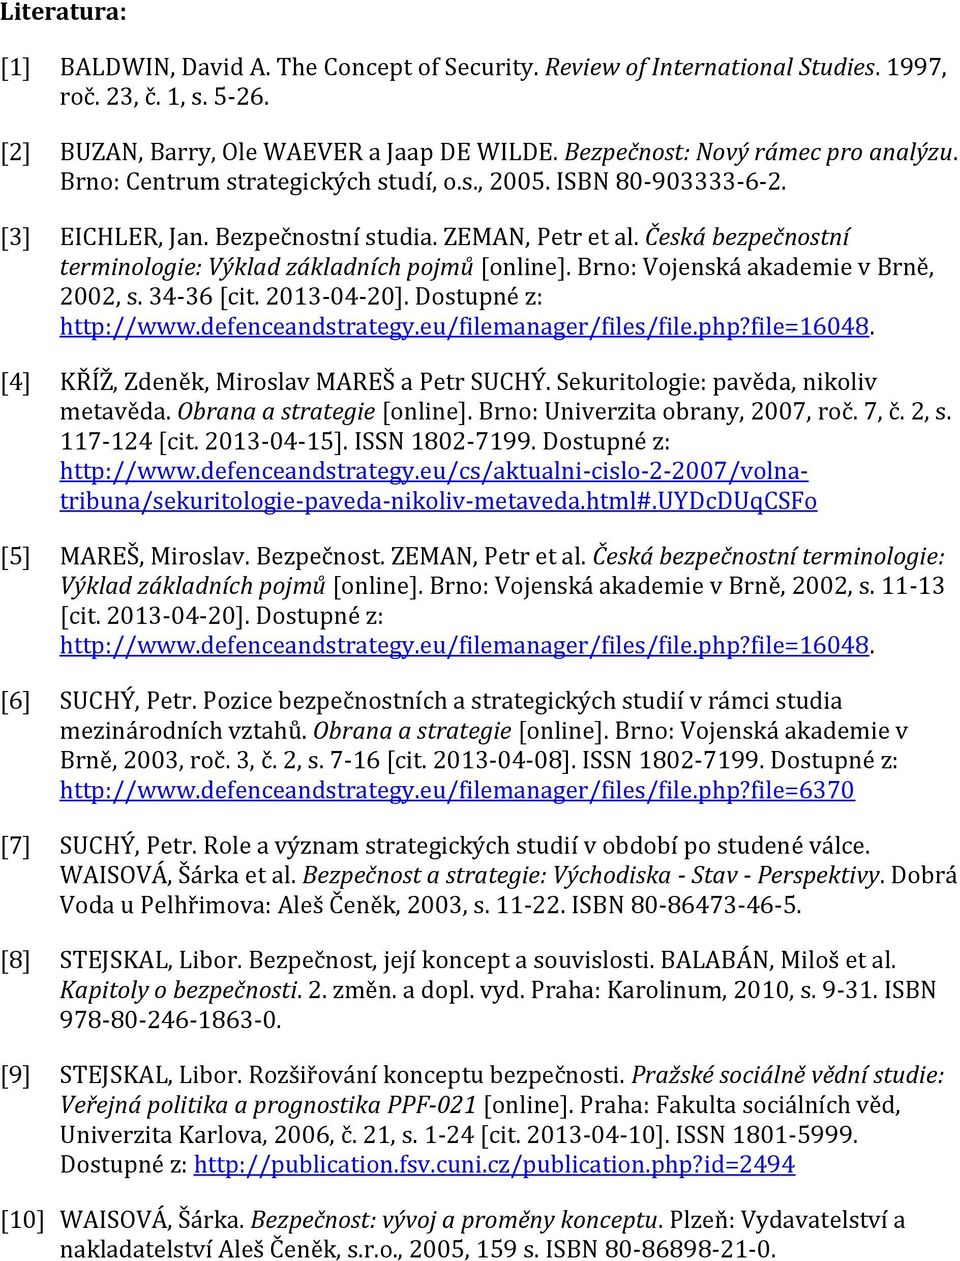 Česká bezpečnostní terminologie: Výklad základních pojmů [online]. Brno: Vojenská akademie v Brně, 2002, s. 34-36 [cit. 2013-04-20]. Dostupné z: http://www.defenceandstrategy.